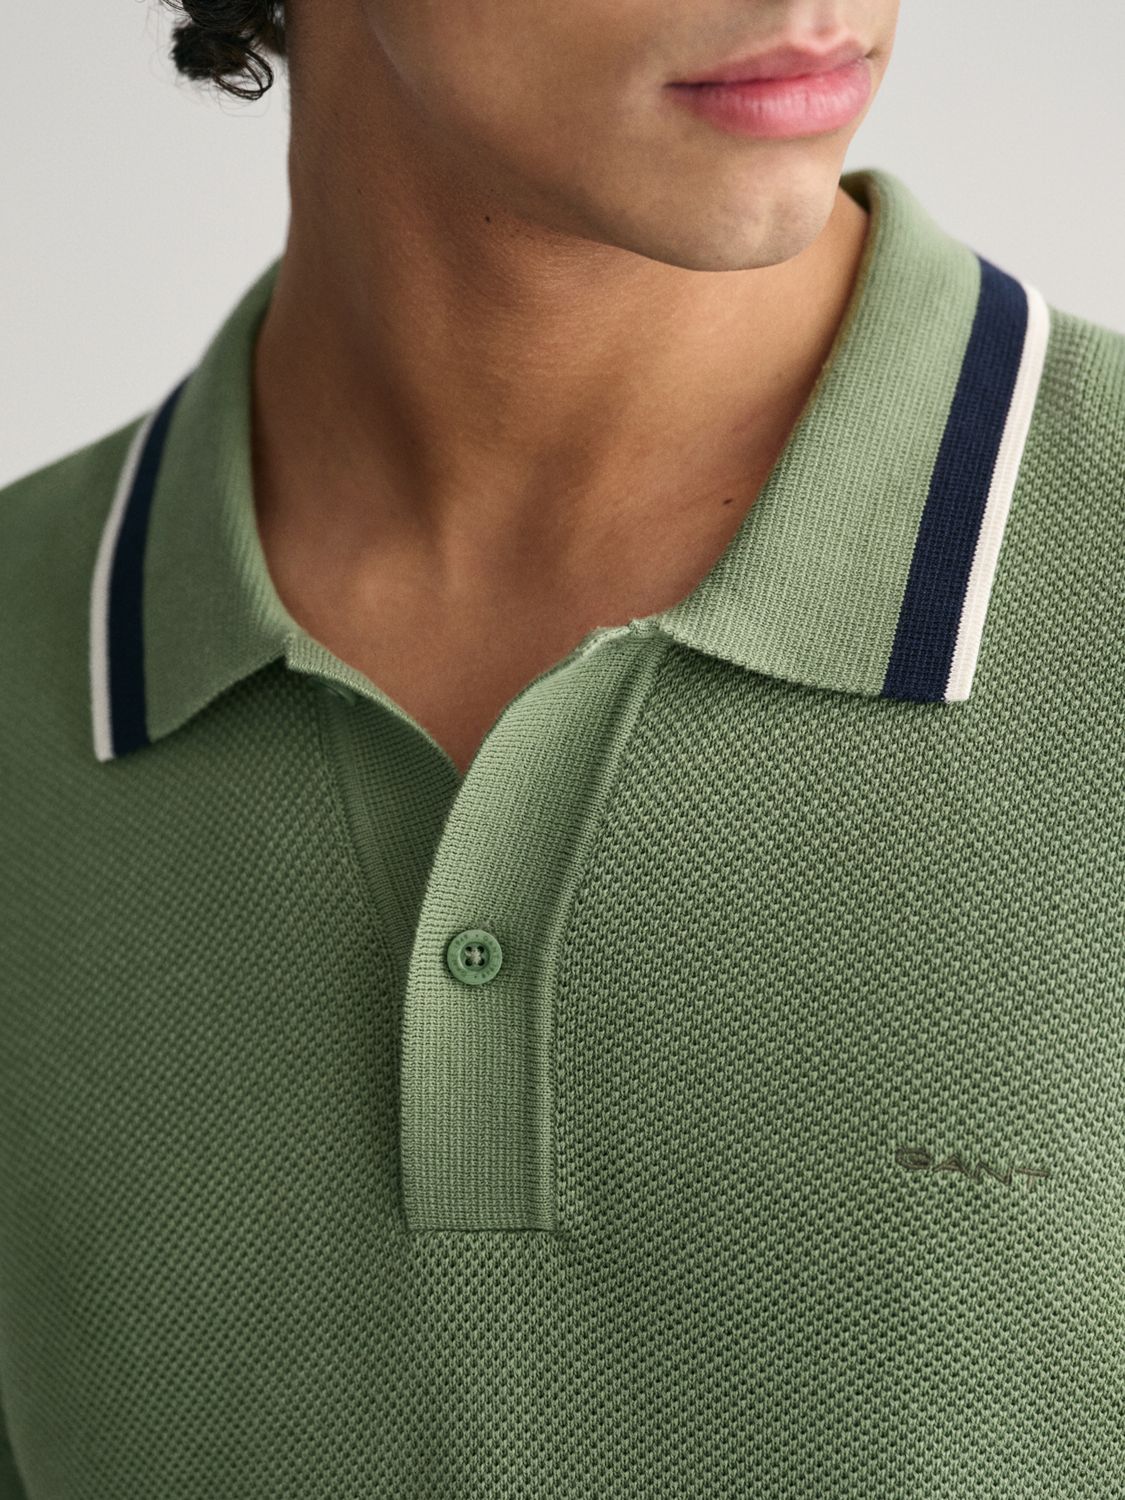 GANT Cotton Pique Short Sleeve Polo Shirt, Green, M